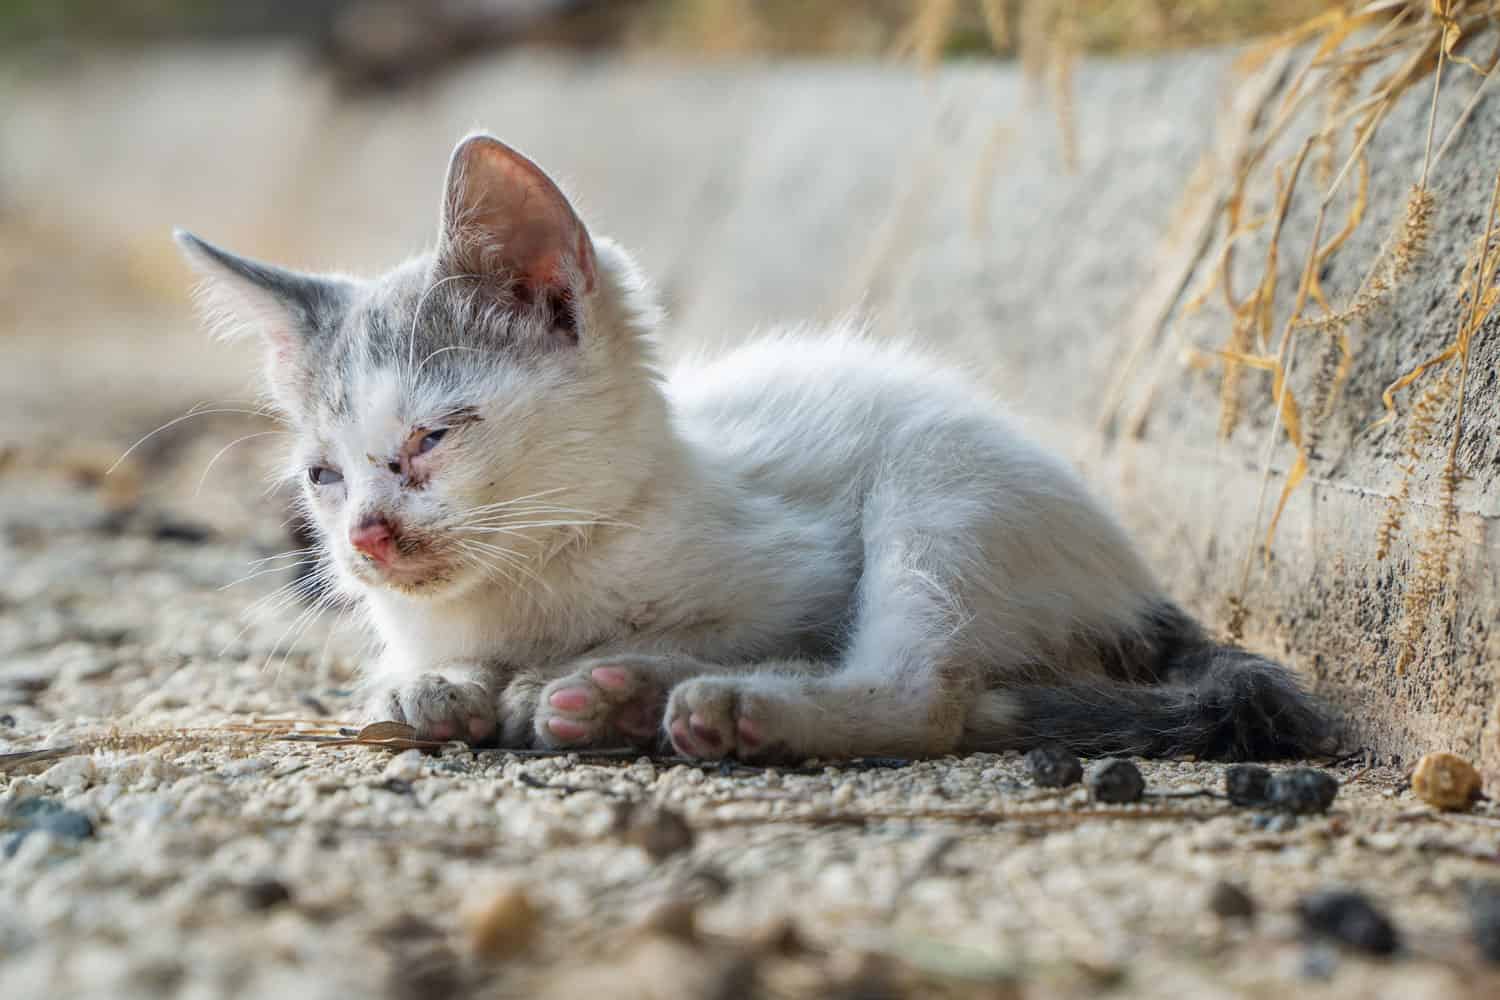 Homeless kitten abandoned on the street.
